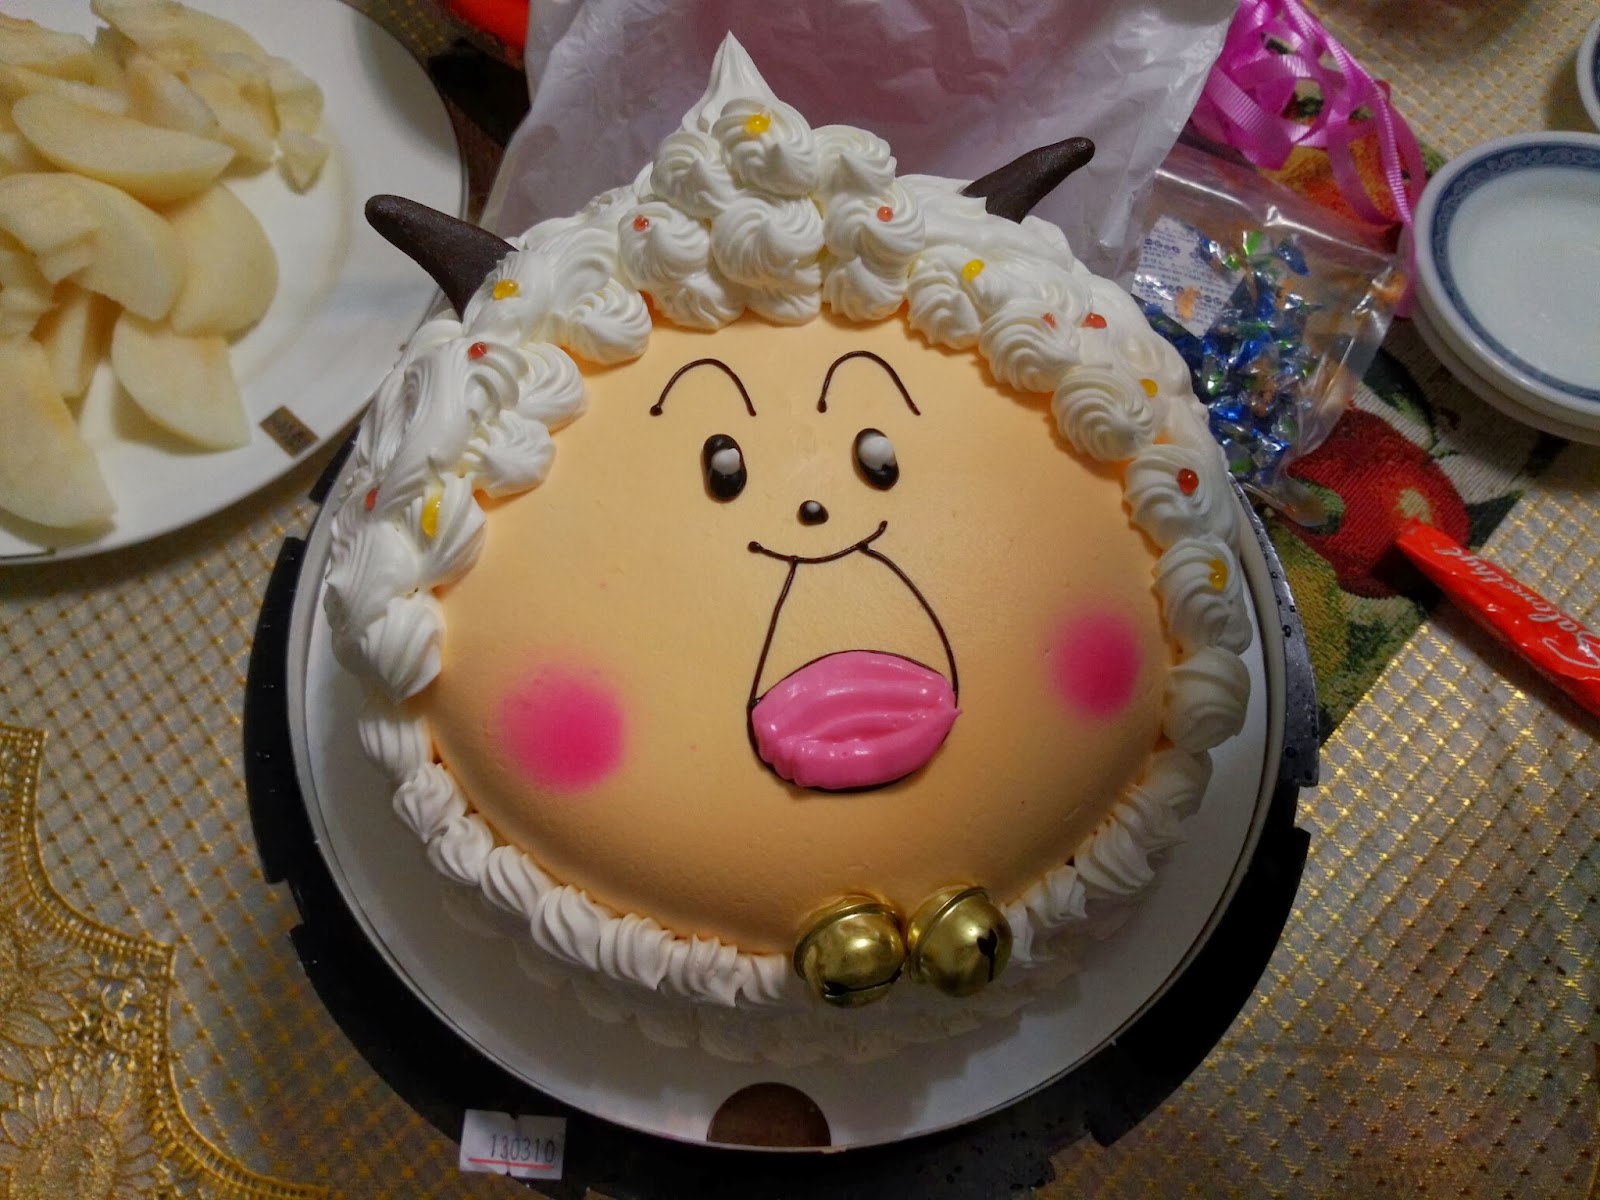 吃喝玩樂: 聖保羅出品之"喜洋洋"生日蛋糕